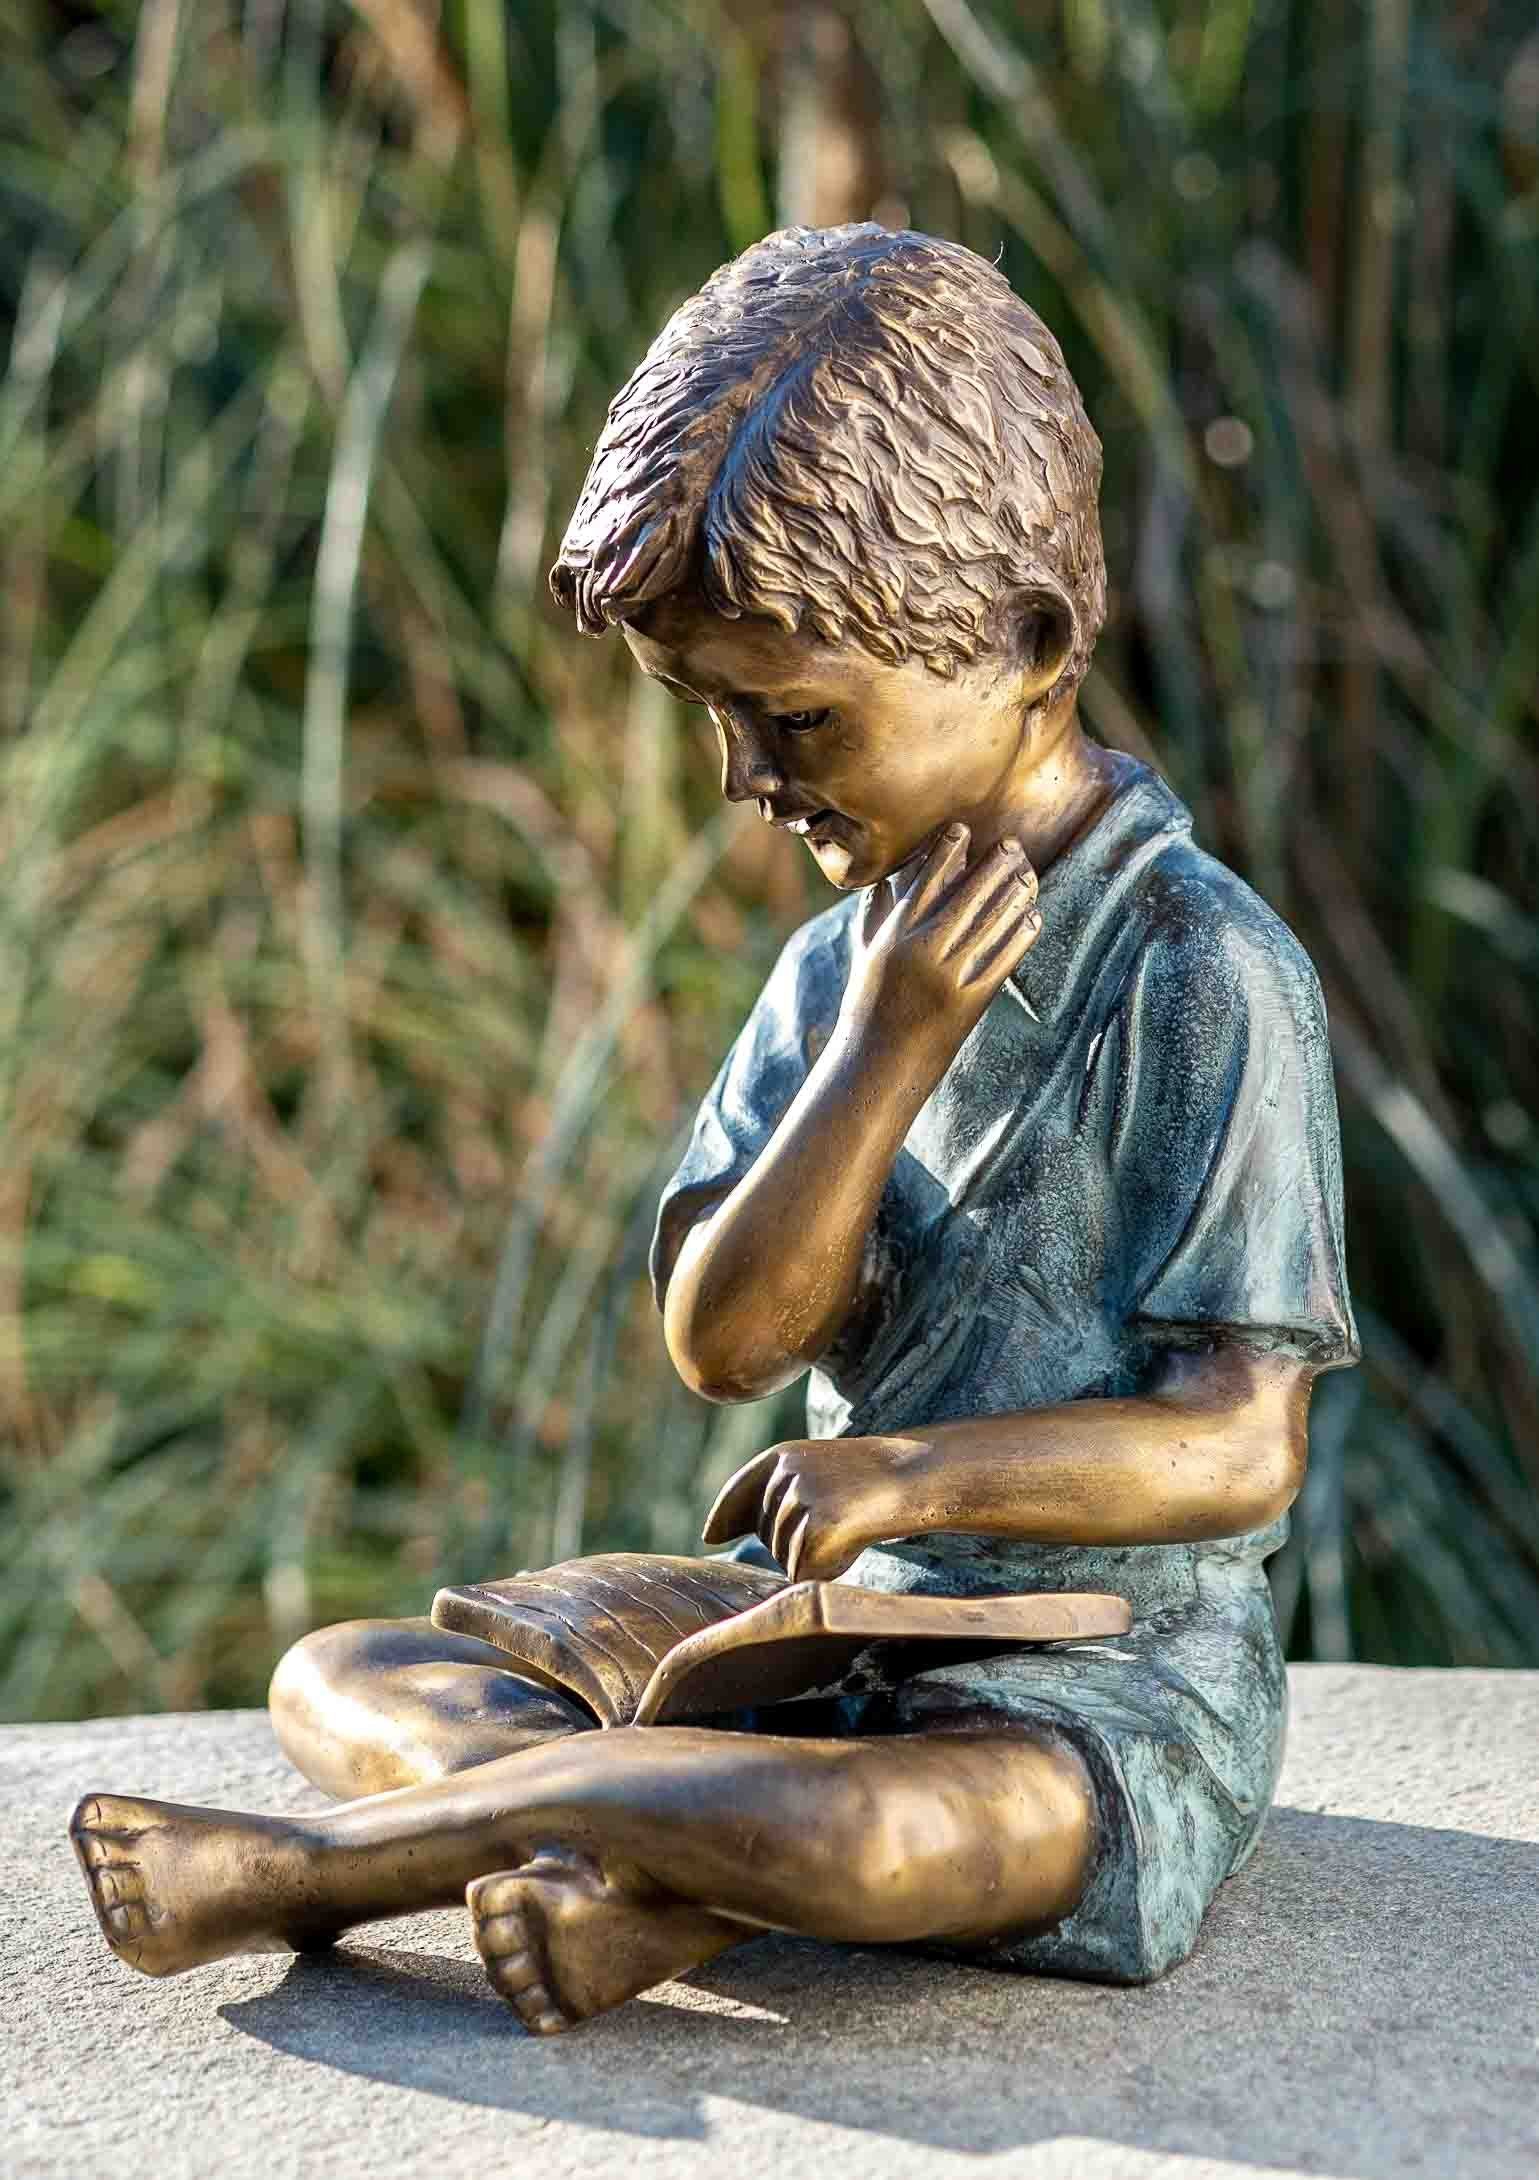 IDYL Gartenfigur IDYL Bronze-Skulptur Lesender Bronze – Frost, Regen werden Die patiniert. Modelle gegen witterungsbeständig gegossen robust in Junge, in – Hand Langlebig Wachsausschmelzverfahren Bronze und UV-Strahlung. und von – sehr